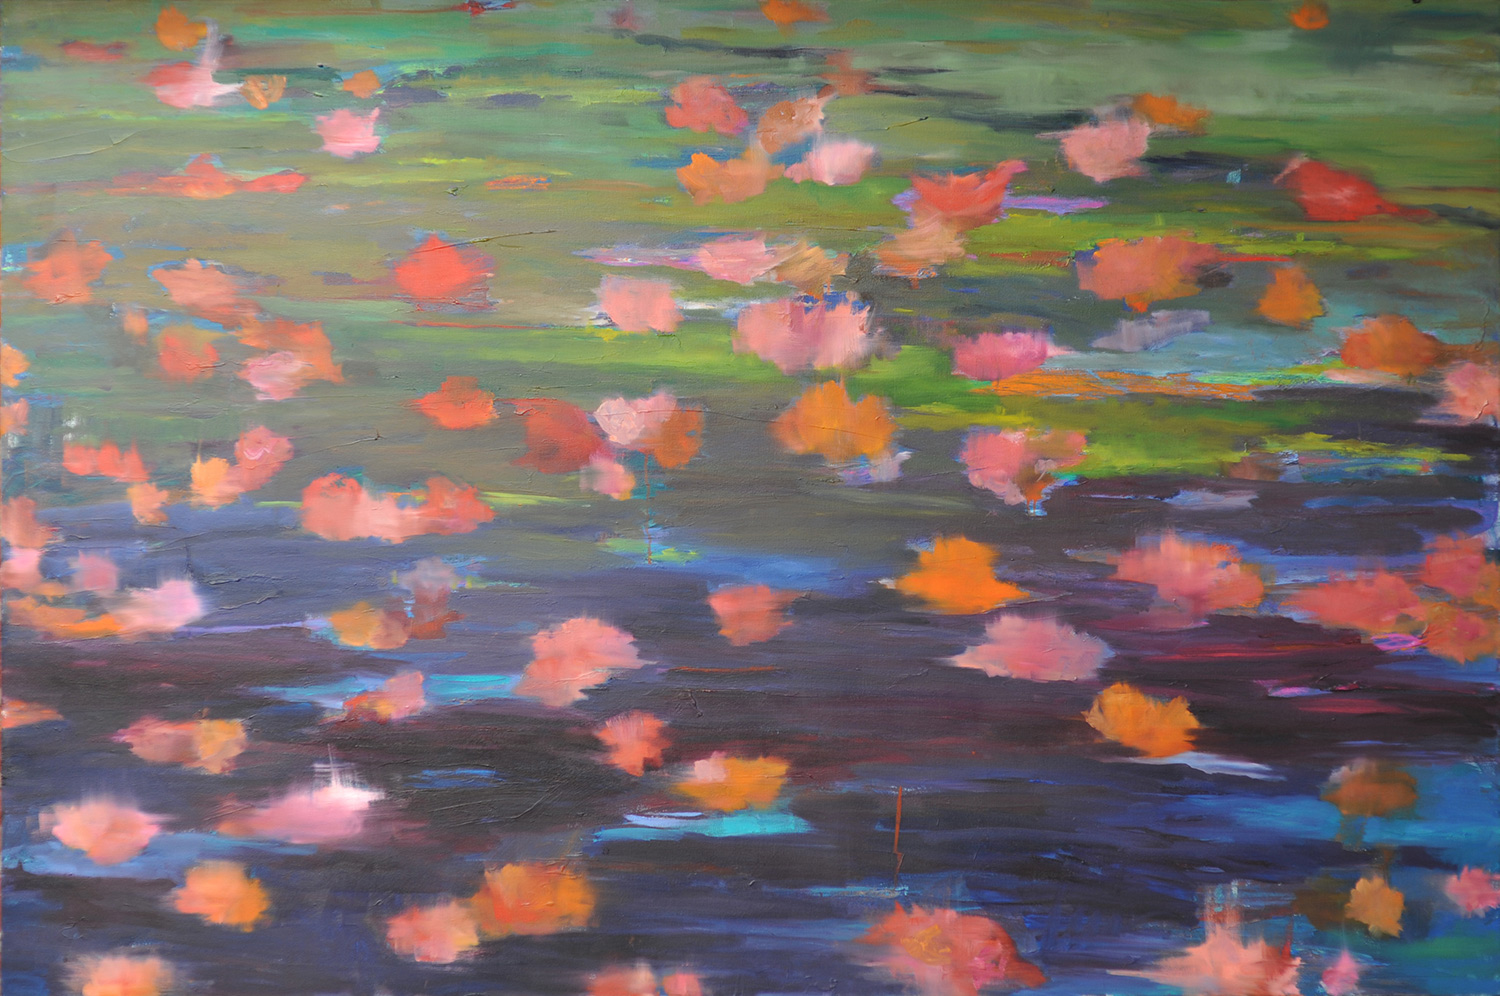 Camellias-Descanso-Gardens-oil-on-canvas-48-x-72